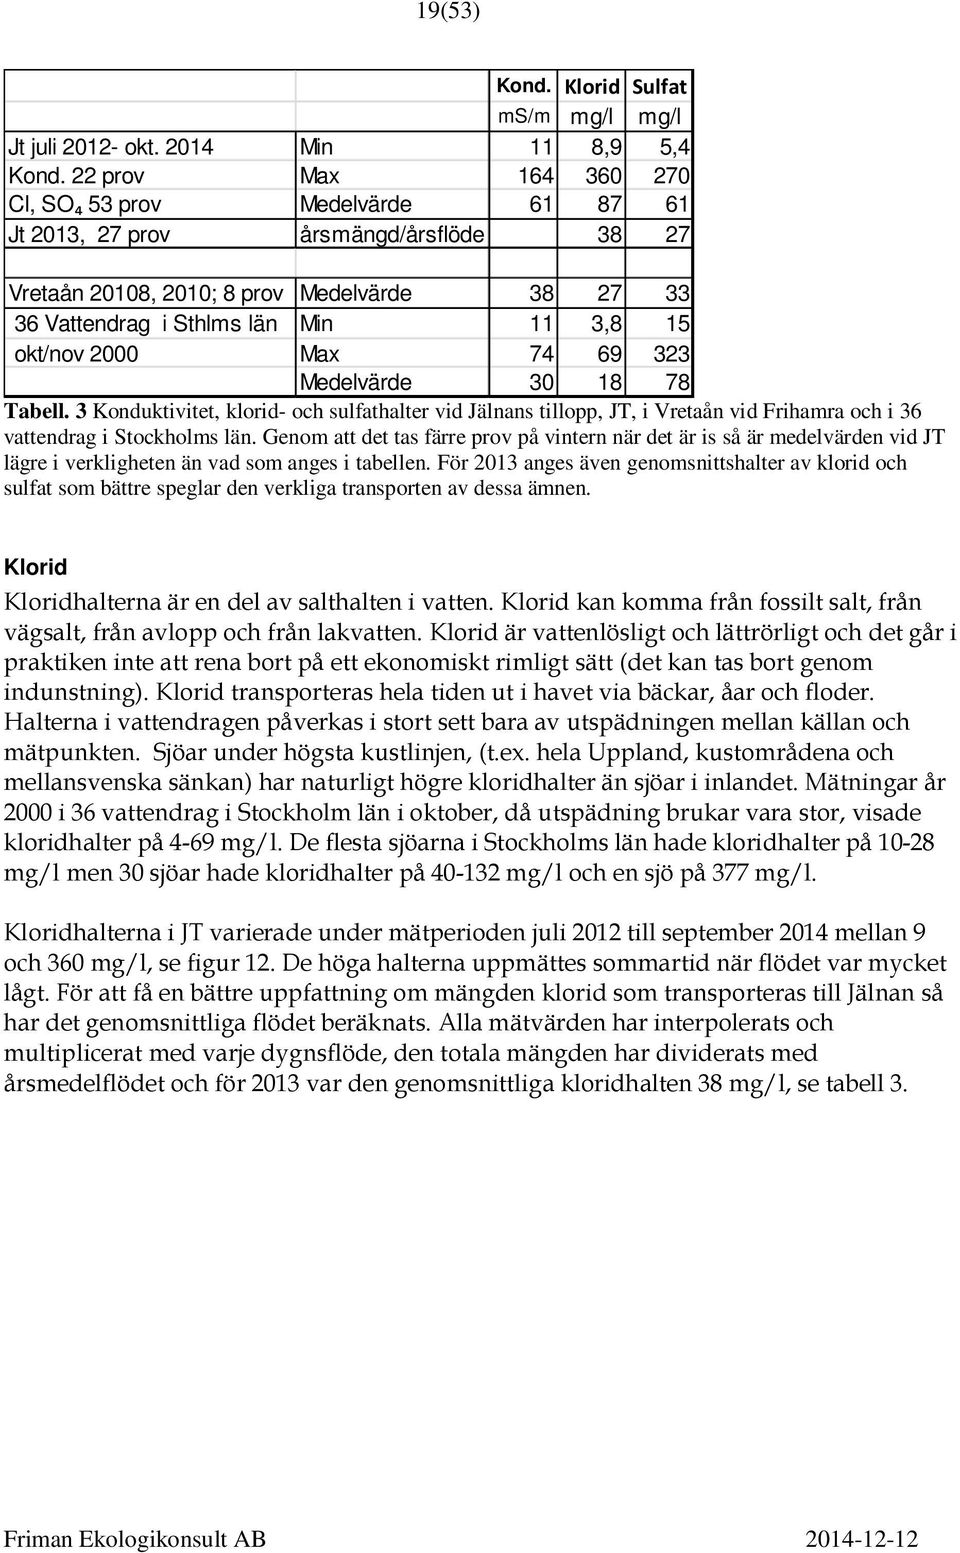 2000 Max 74 69 323 Medelvärde 30 18 78 Tabell. 3 Konduktivitet, klorid- och sulfathalter vid Jälnans tillopp, JT, i Vretaån vid Frihamra och i 36 vattendrag i Stockholms län.